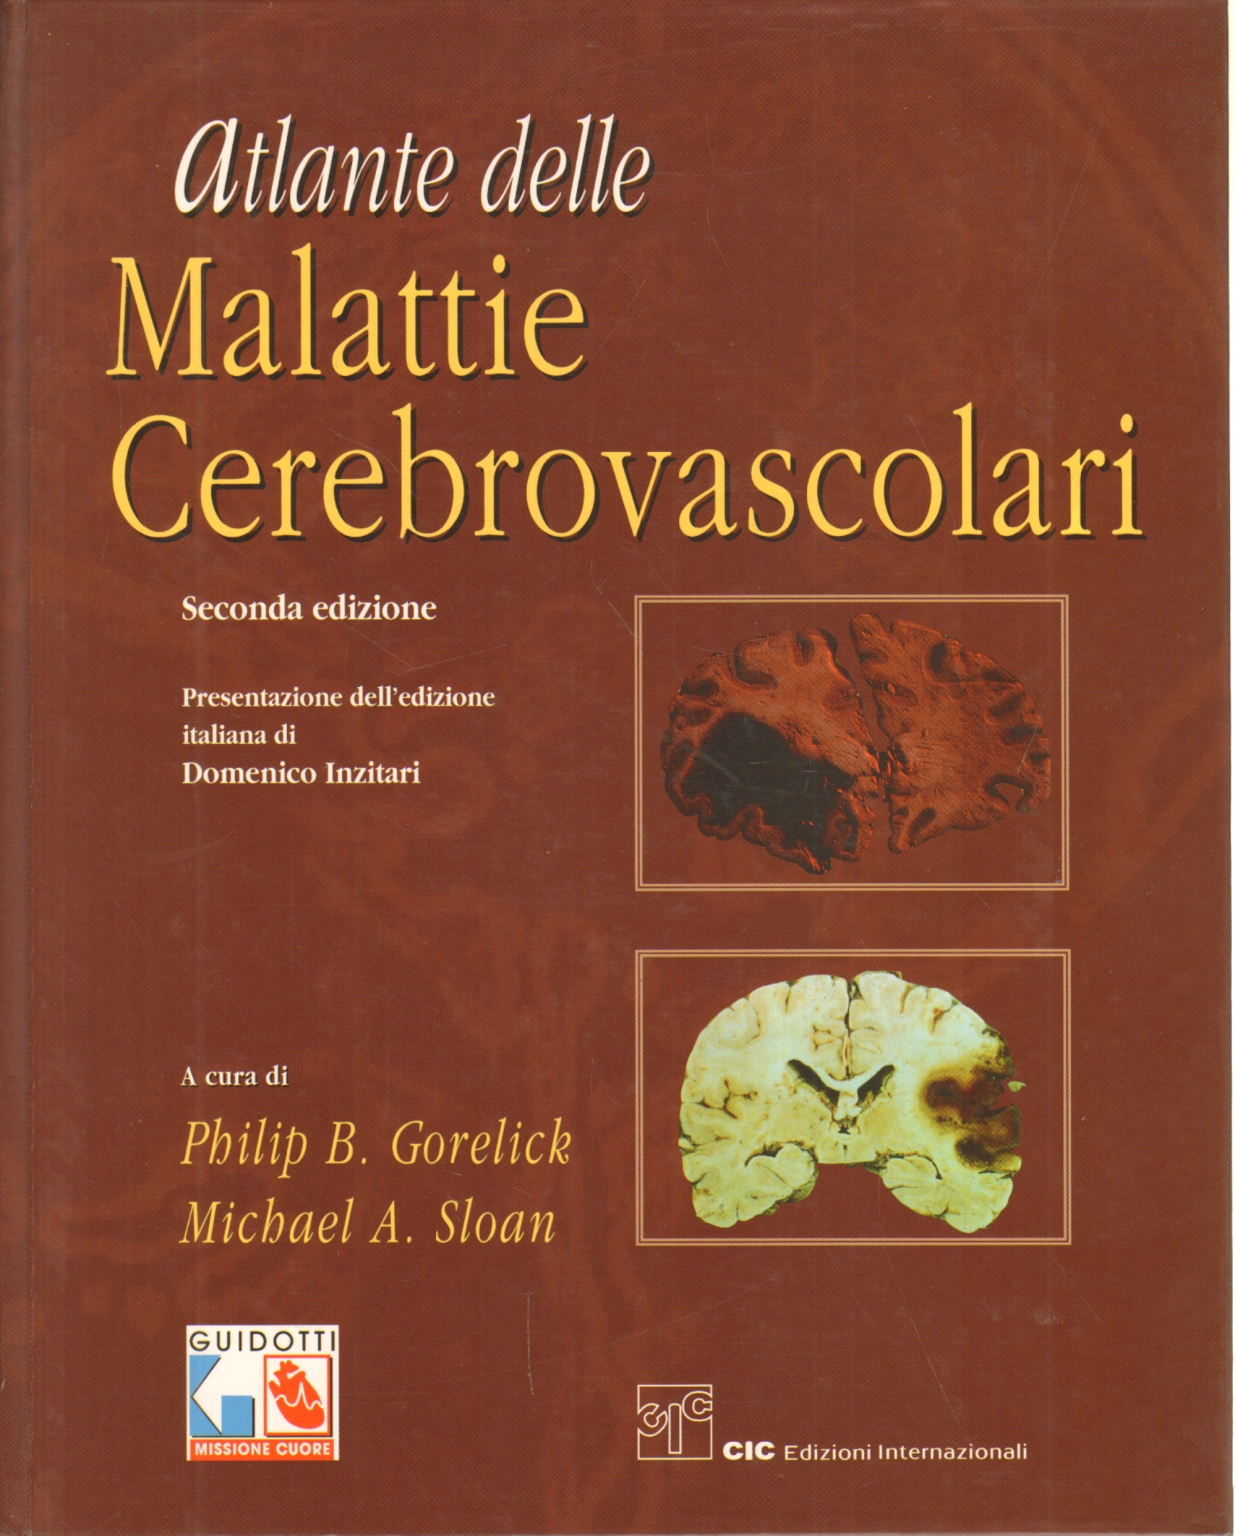 Atlas de la enfermedad cerebrovascular, Philip B. Gorelick y Michael A. Sloan